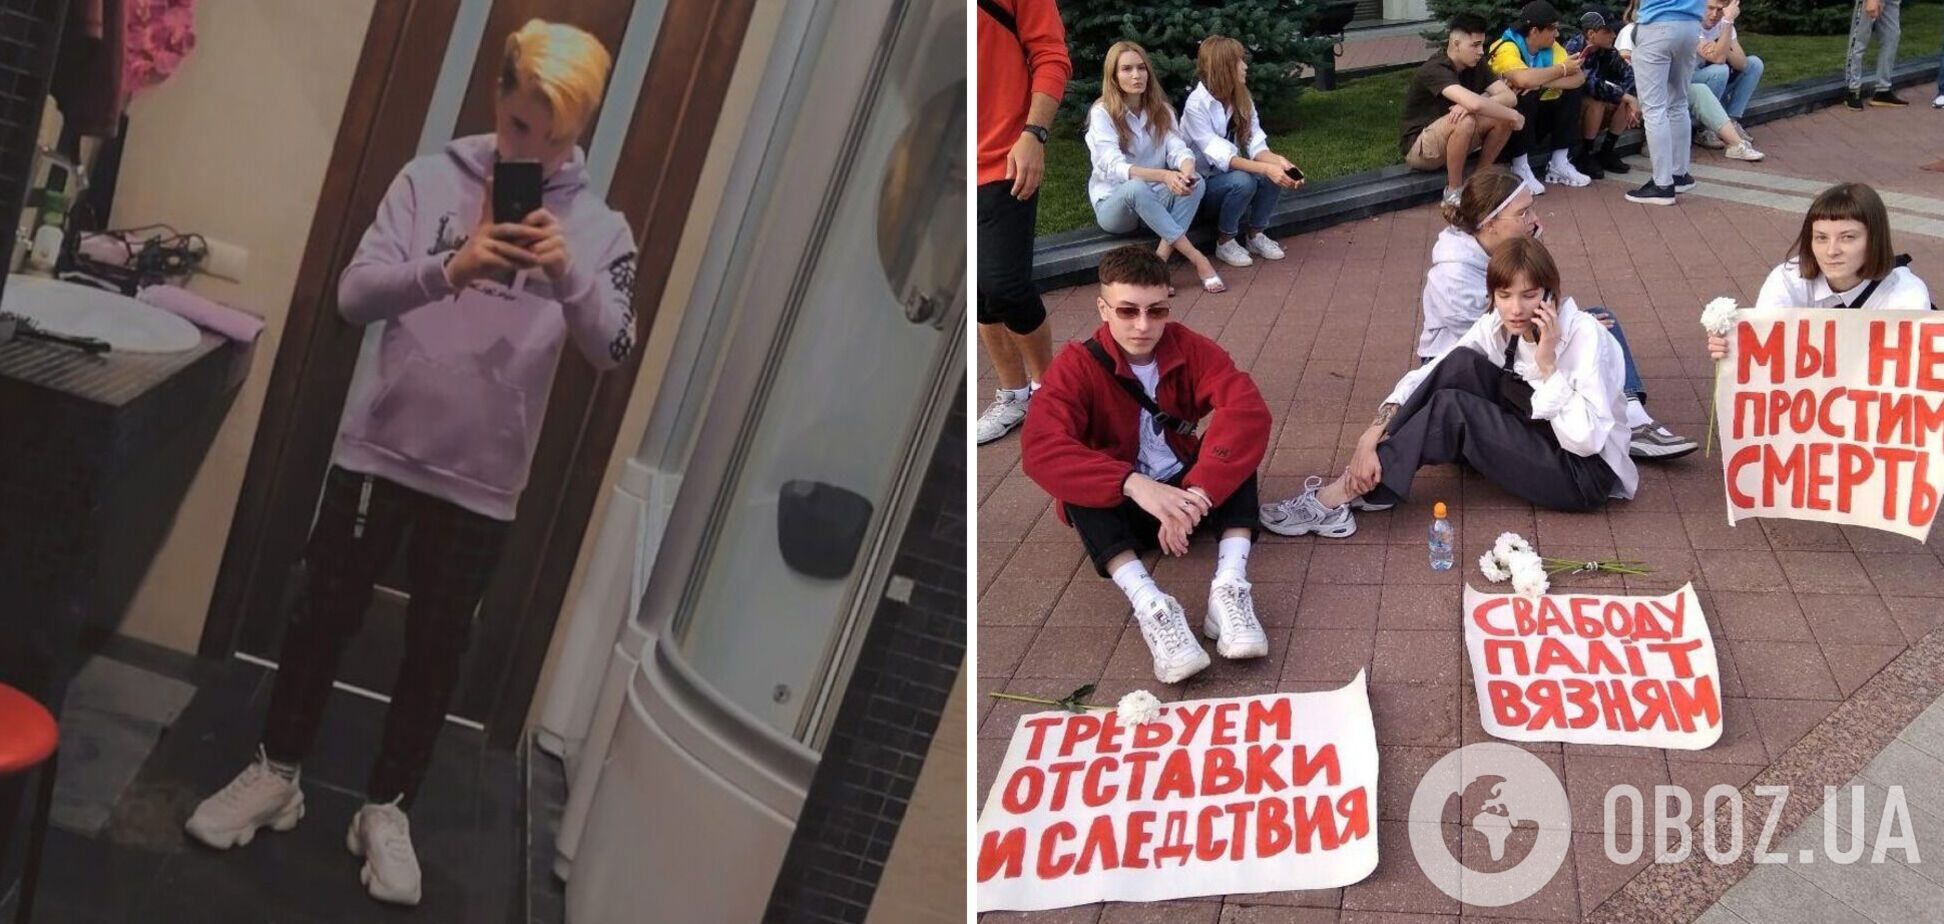 У Мінську підліток наклав на себе руки через переслідування після протестів: опубліковано передсмертну записку